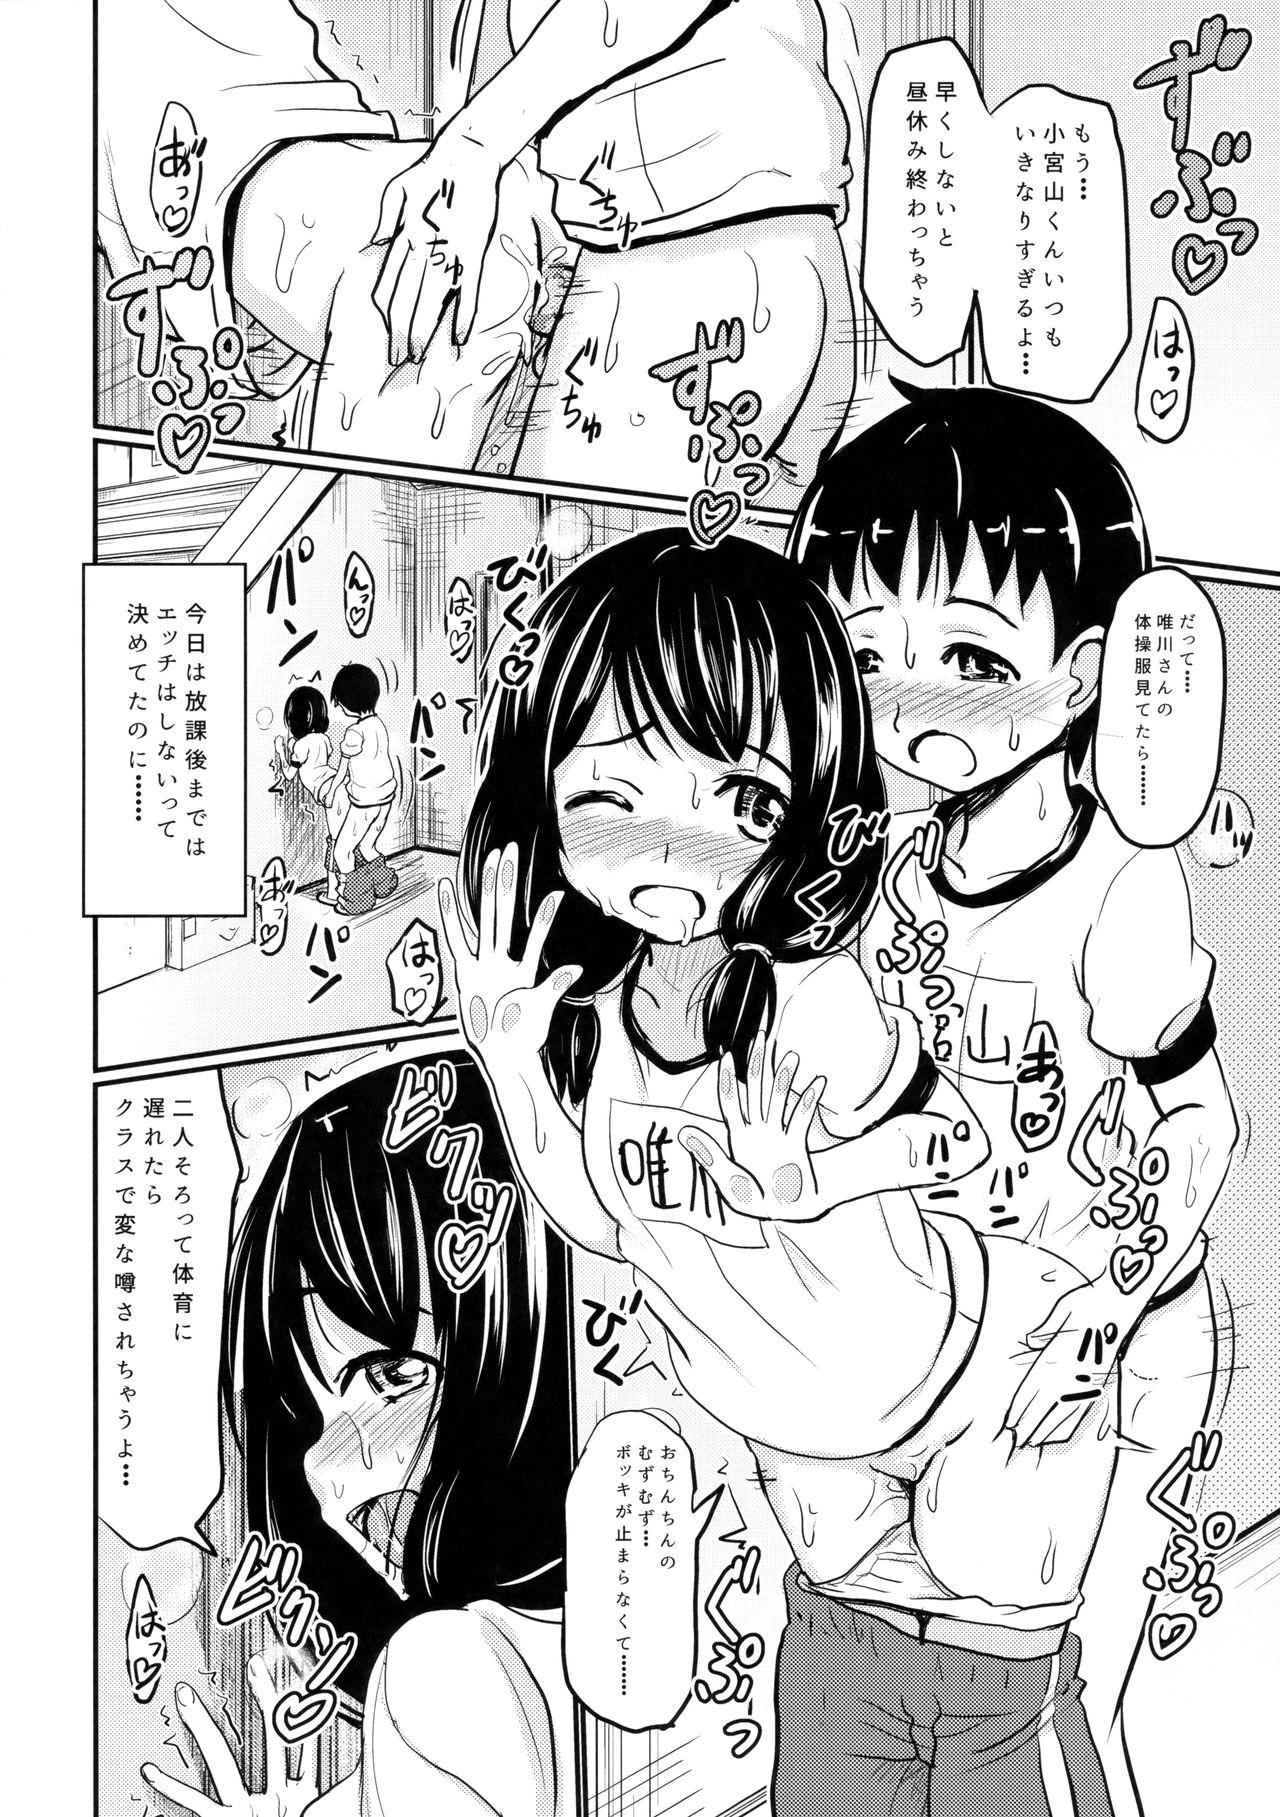 Nalgas Shougakusei Bitch wa Saikou daze!! Yuikawa Mayu no Dokidoki Ecchi wa Tomerarenai Hen Leite - Page 7